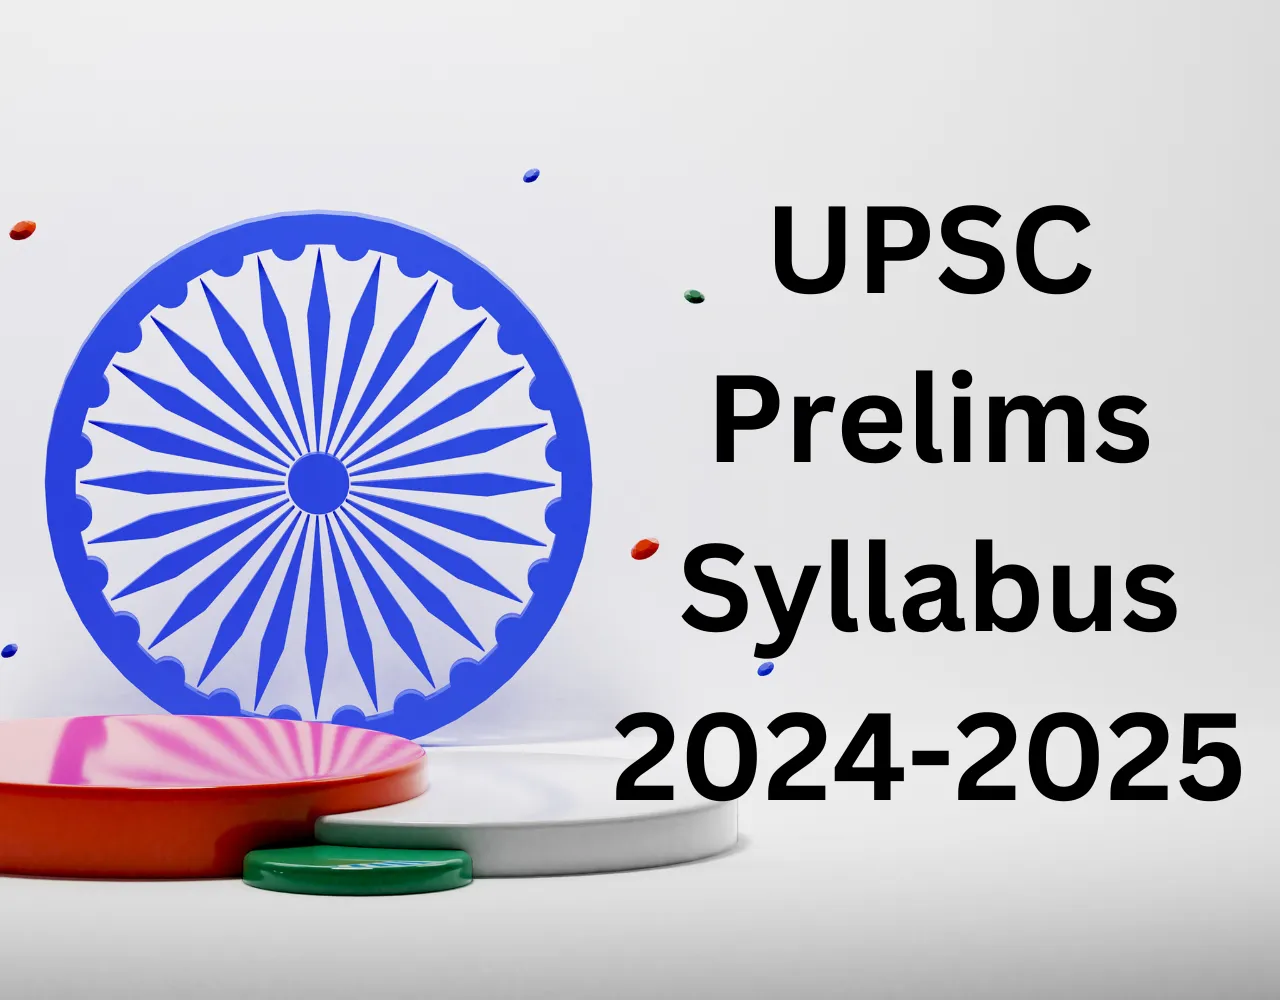 UPSC Prelims Syllabus 2024-2025